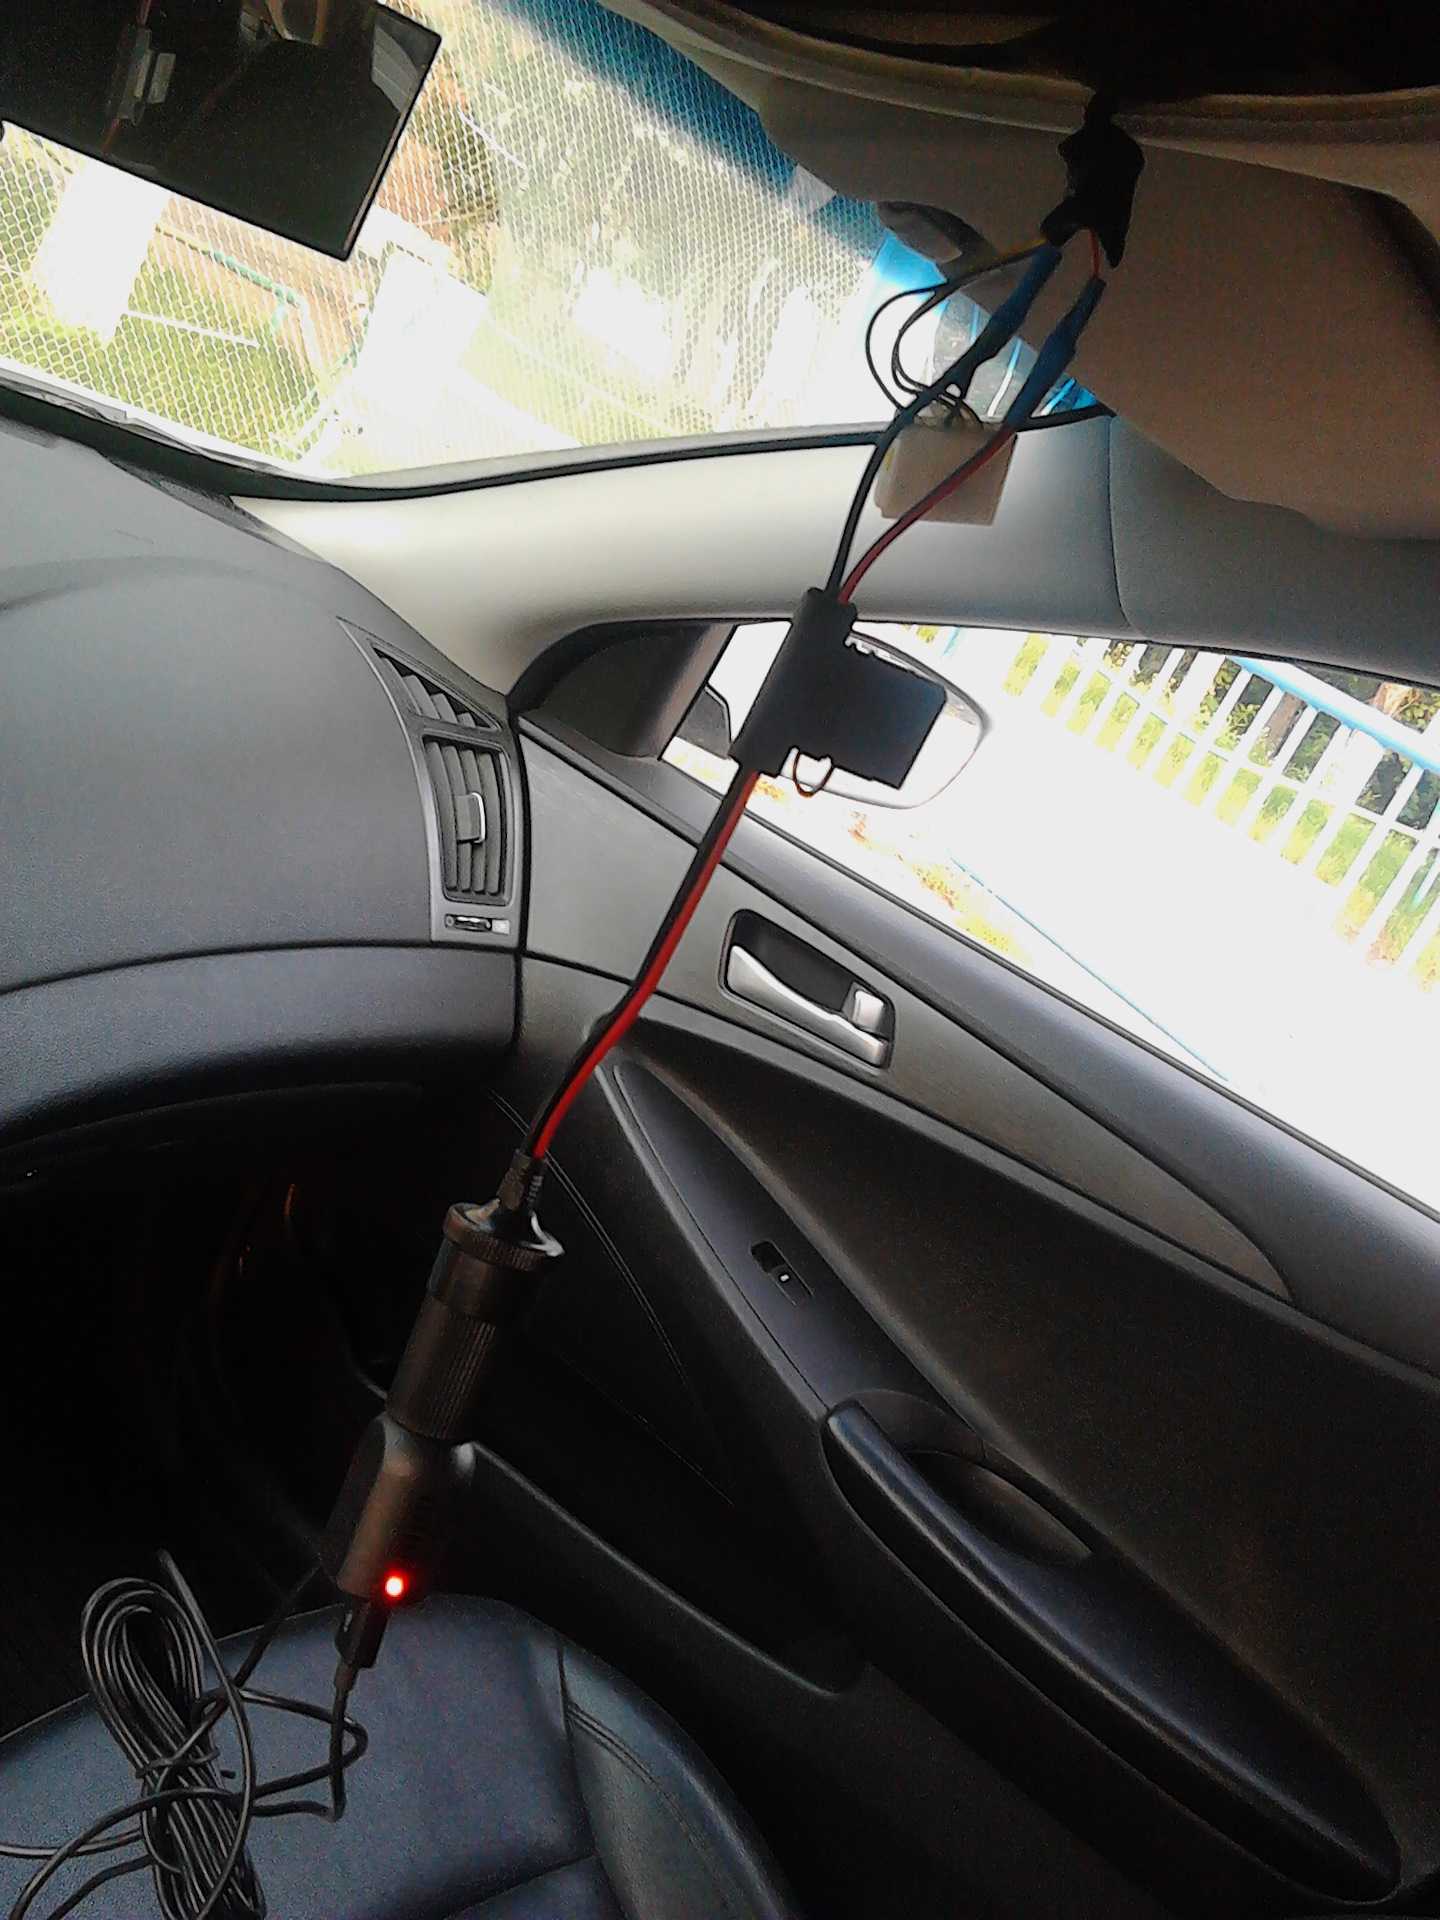 Способы установки видеорегистратора на автомобиль виды крепежа тонкости монтажа на стекло торпеда зеркало заднего вида как разместить способы подключения